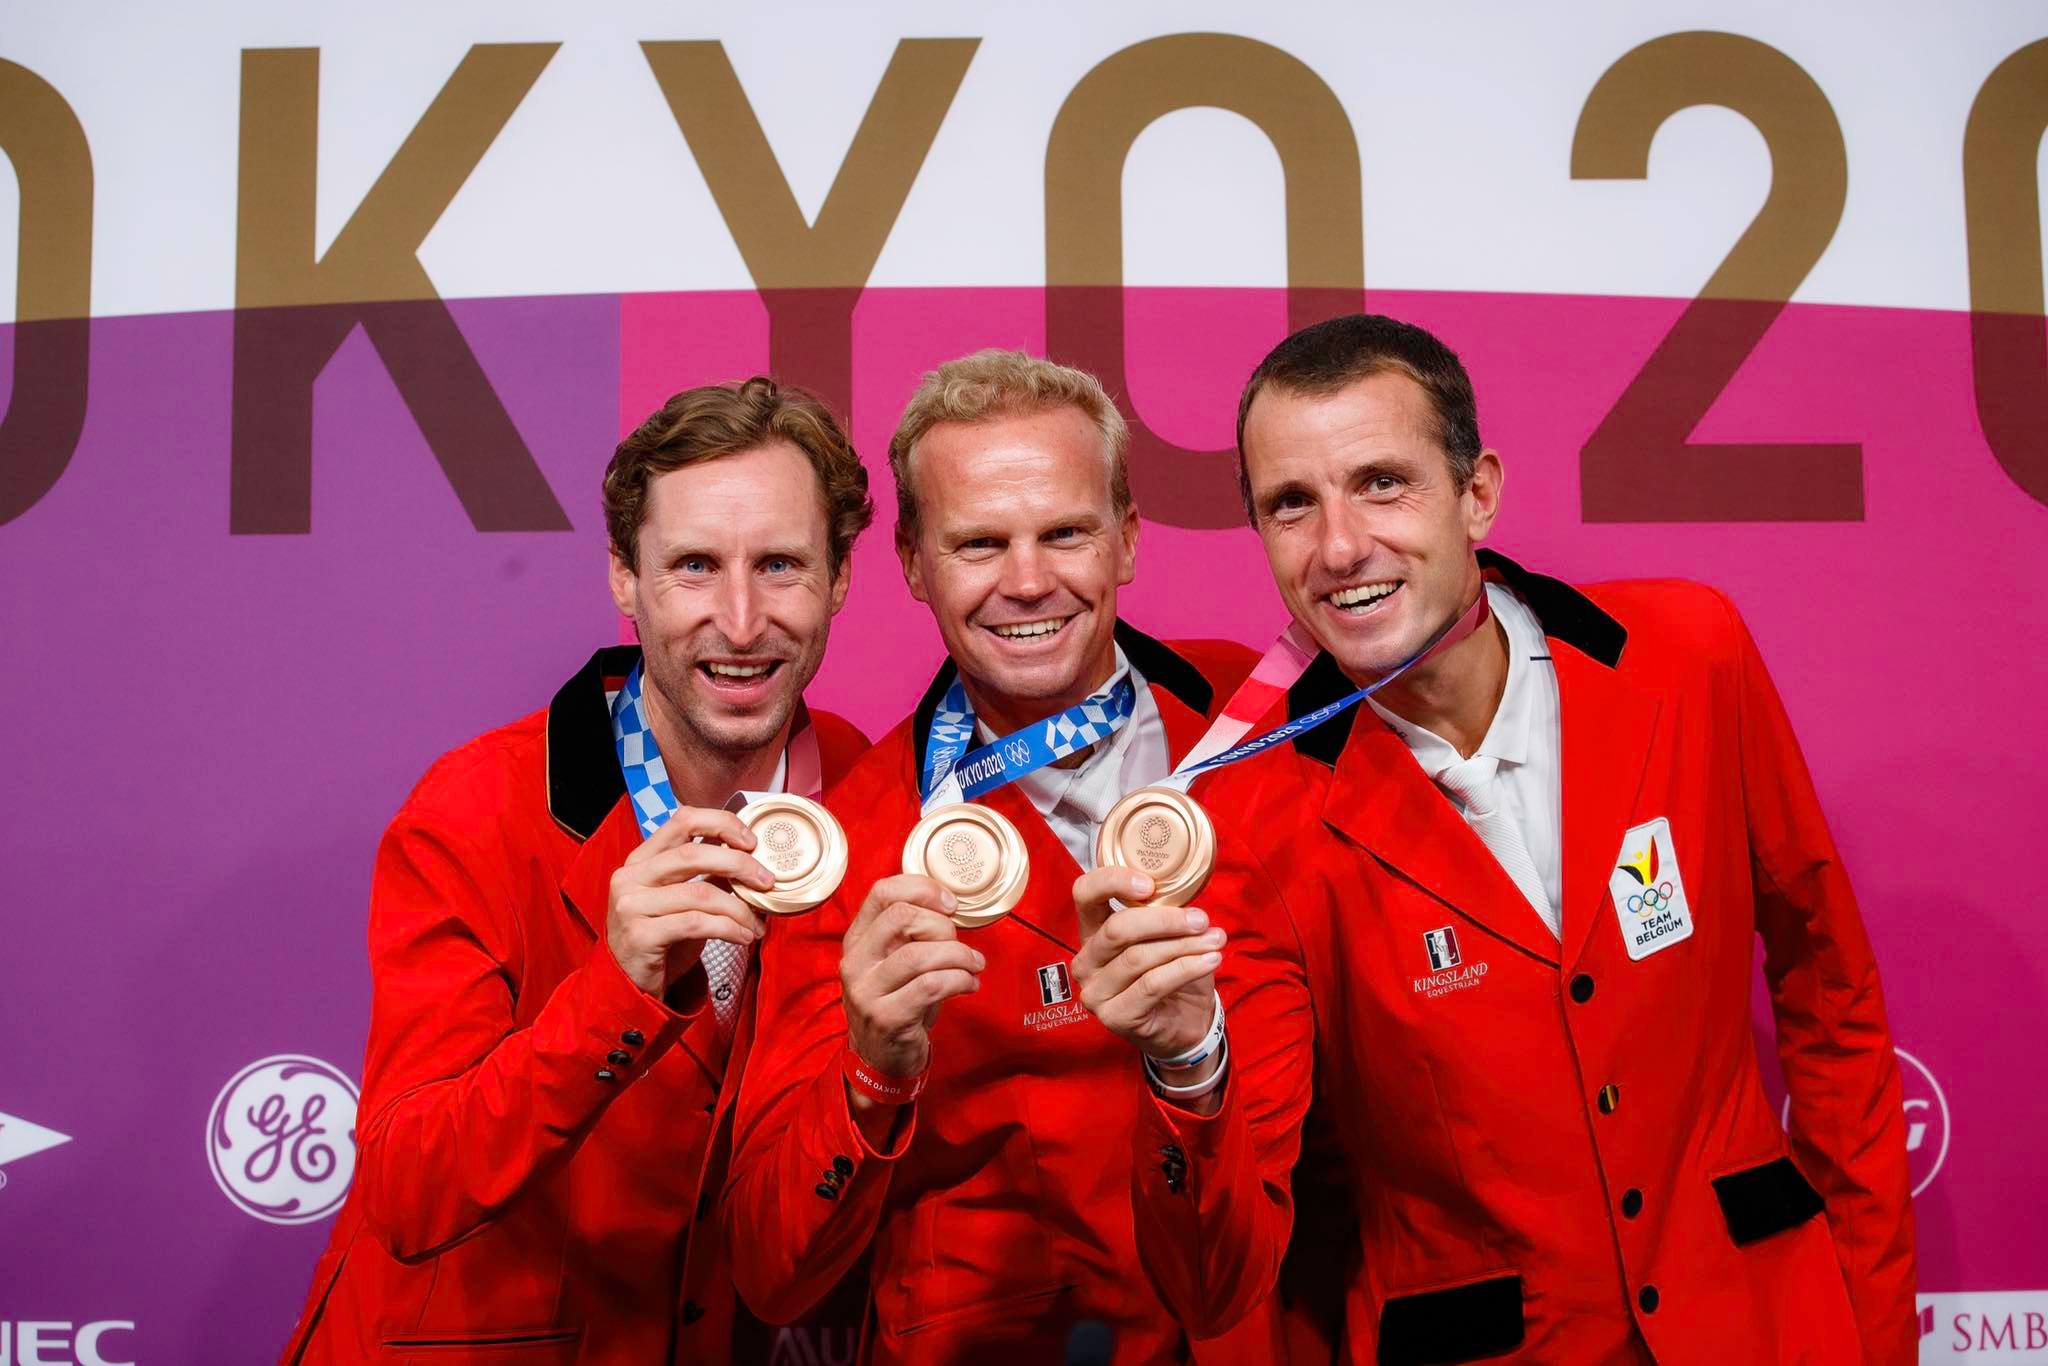 Les Belges s'offrent le bronze olympique ! Peder Fredricson va ALL IN pour l'or suédois